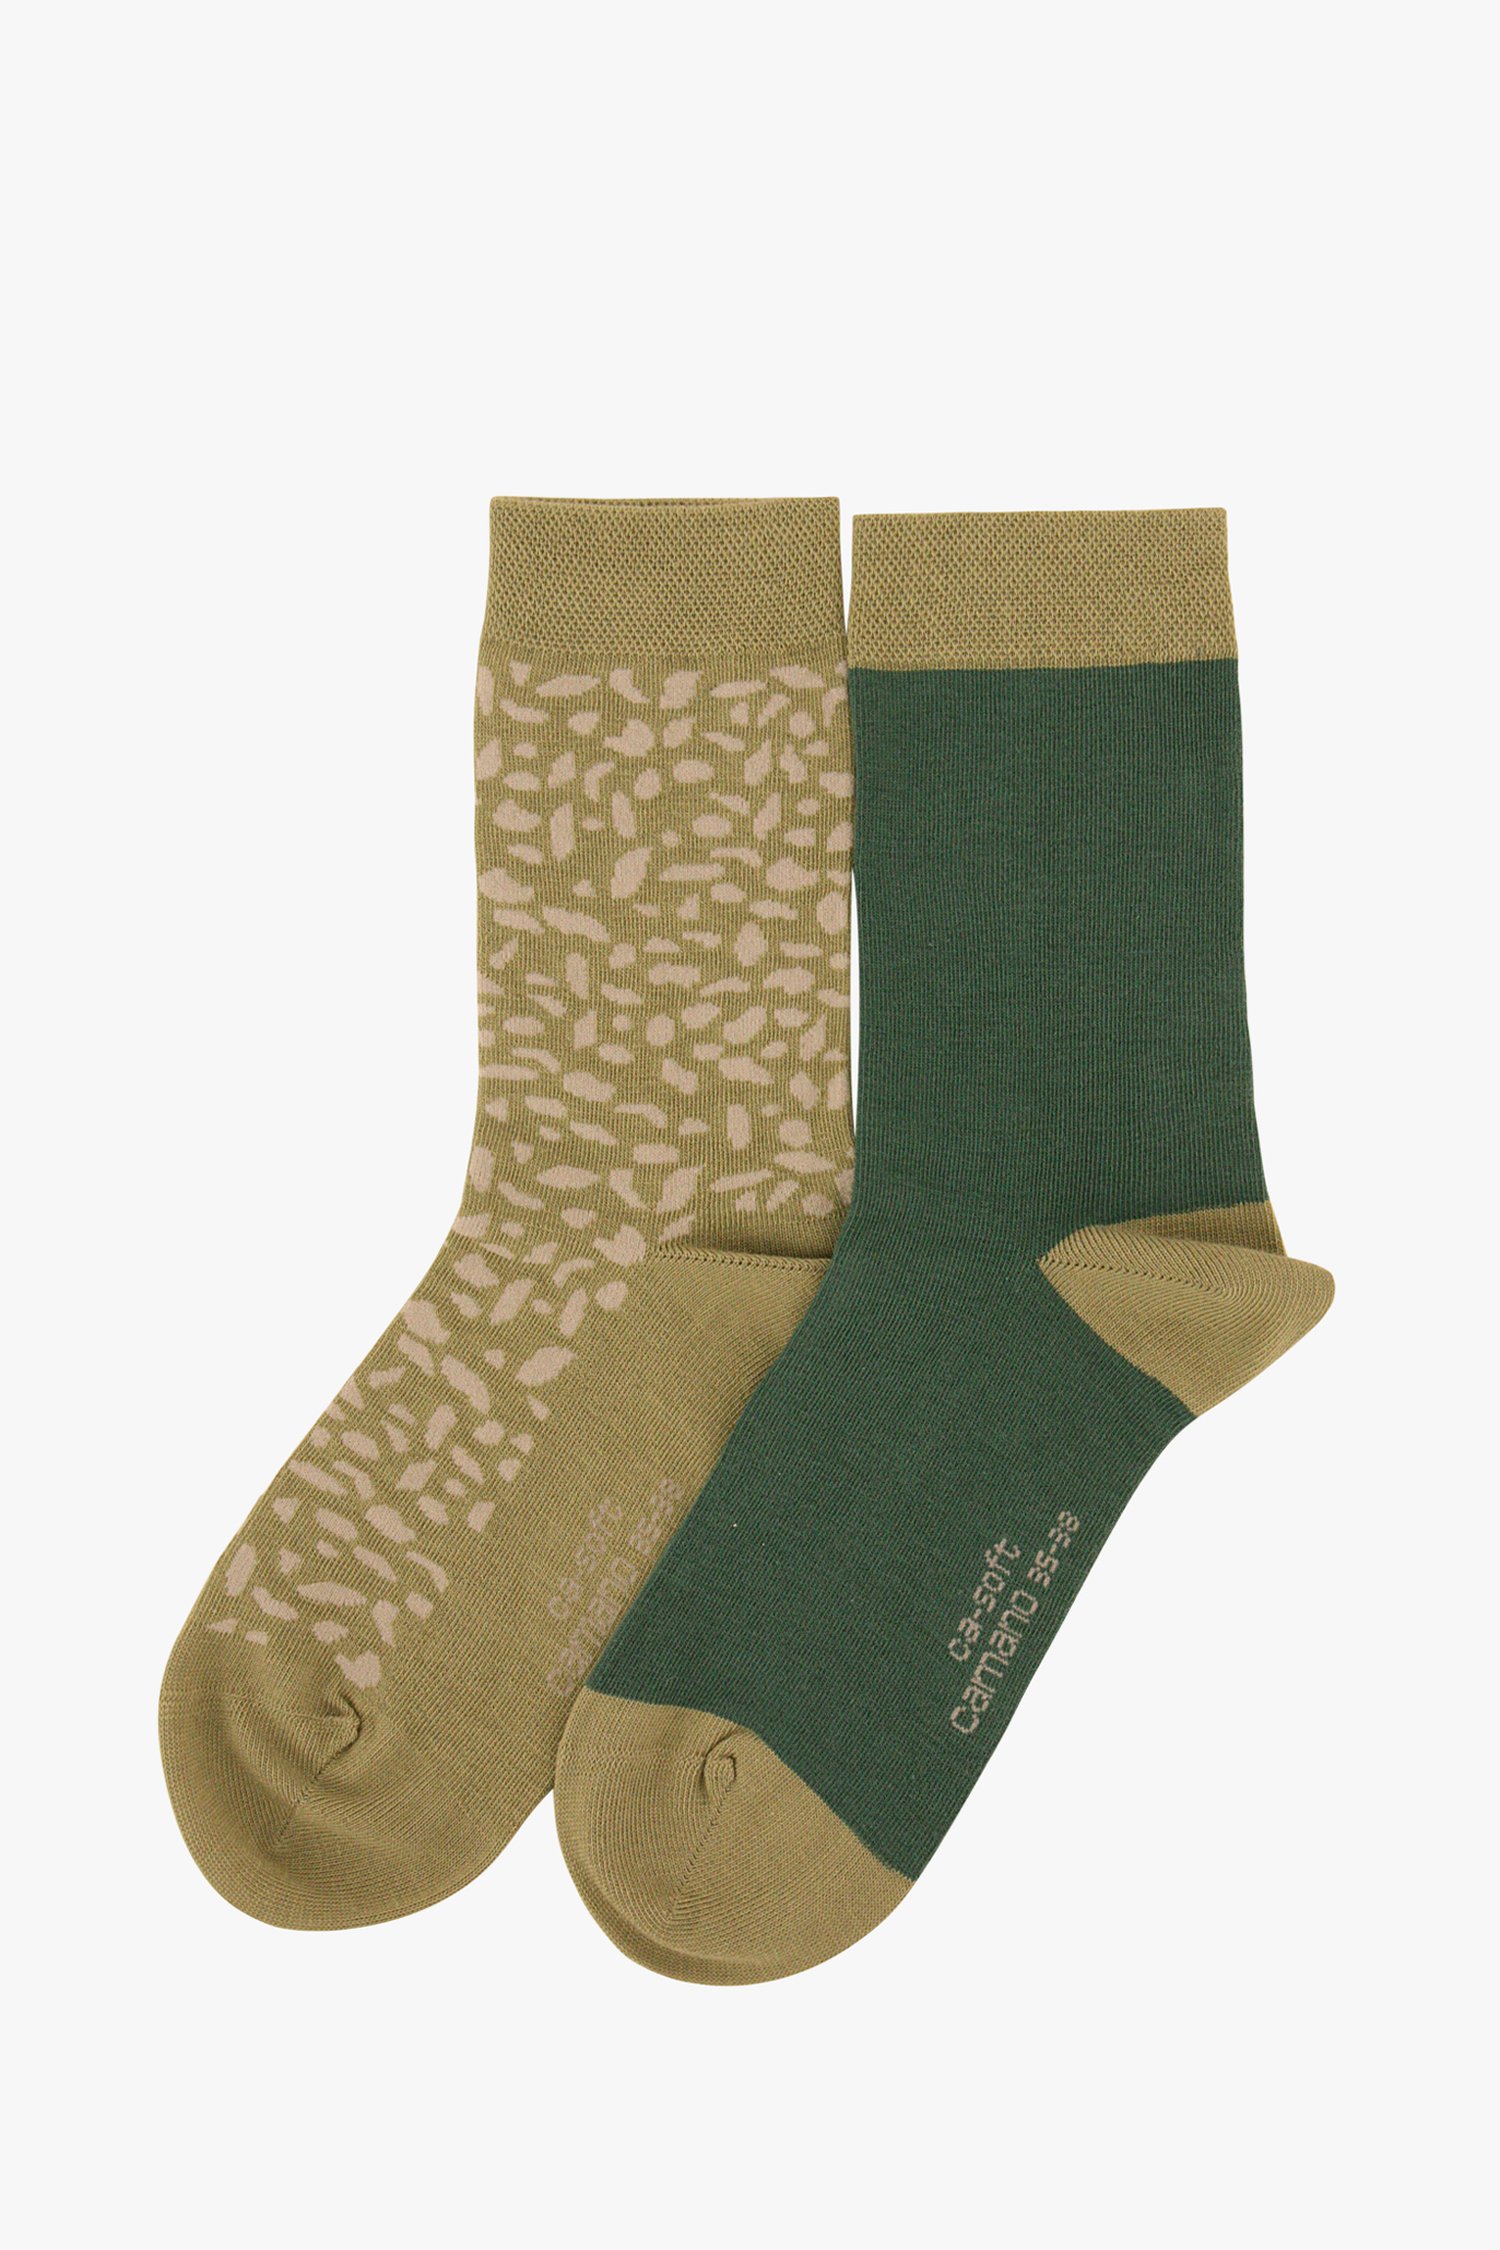 Continu vertaler Dan Groene sokken met print - 2 paar van Camano | 9702020 | e5